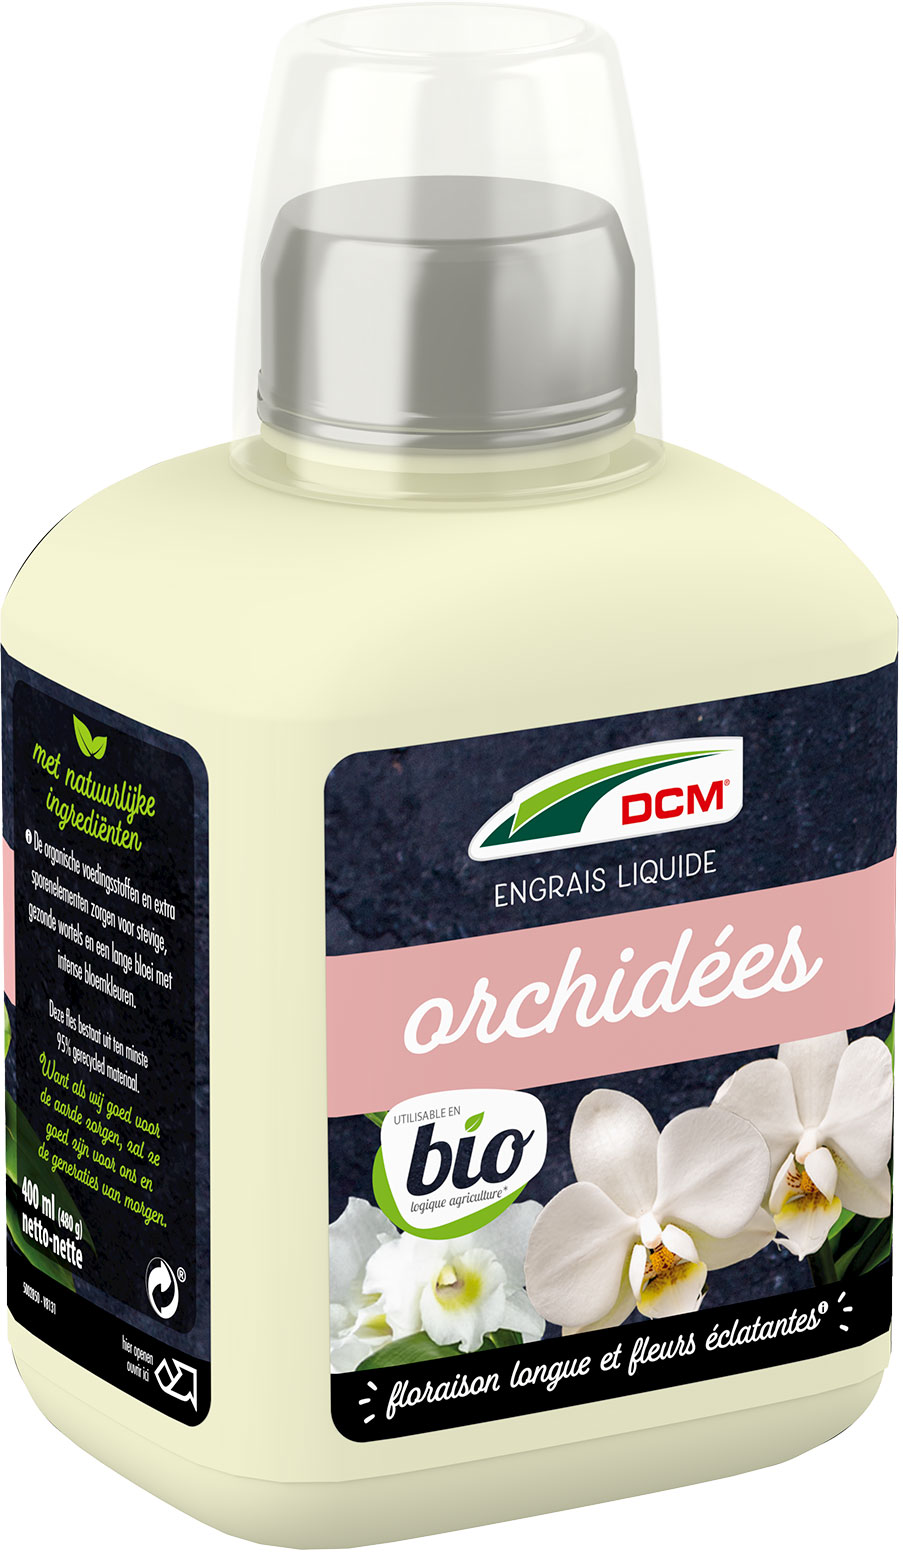 Pack 2 engrais organiques spécial orchidée (2 x 50 g) - Orchidee Facile by  Natural Element